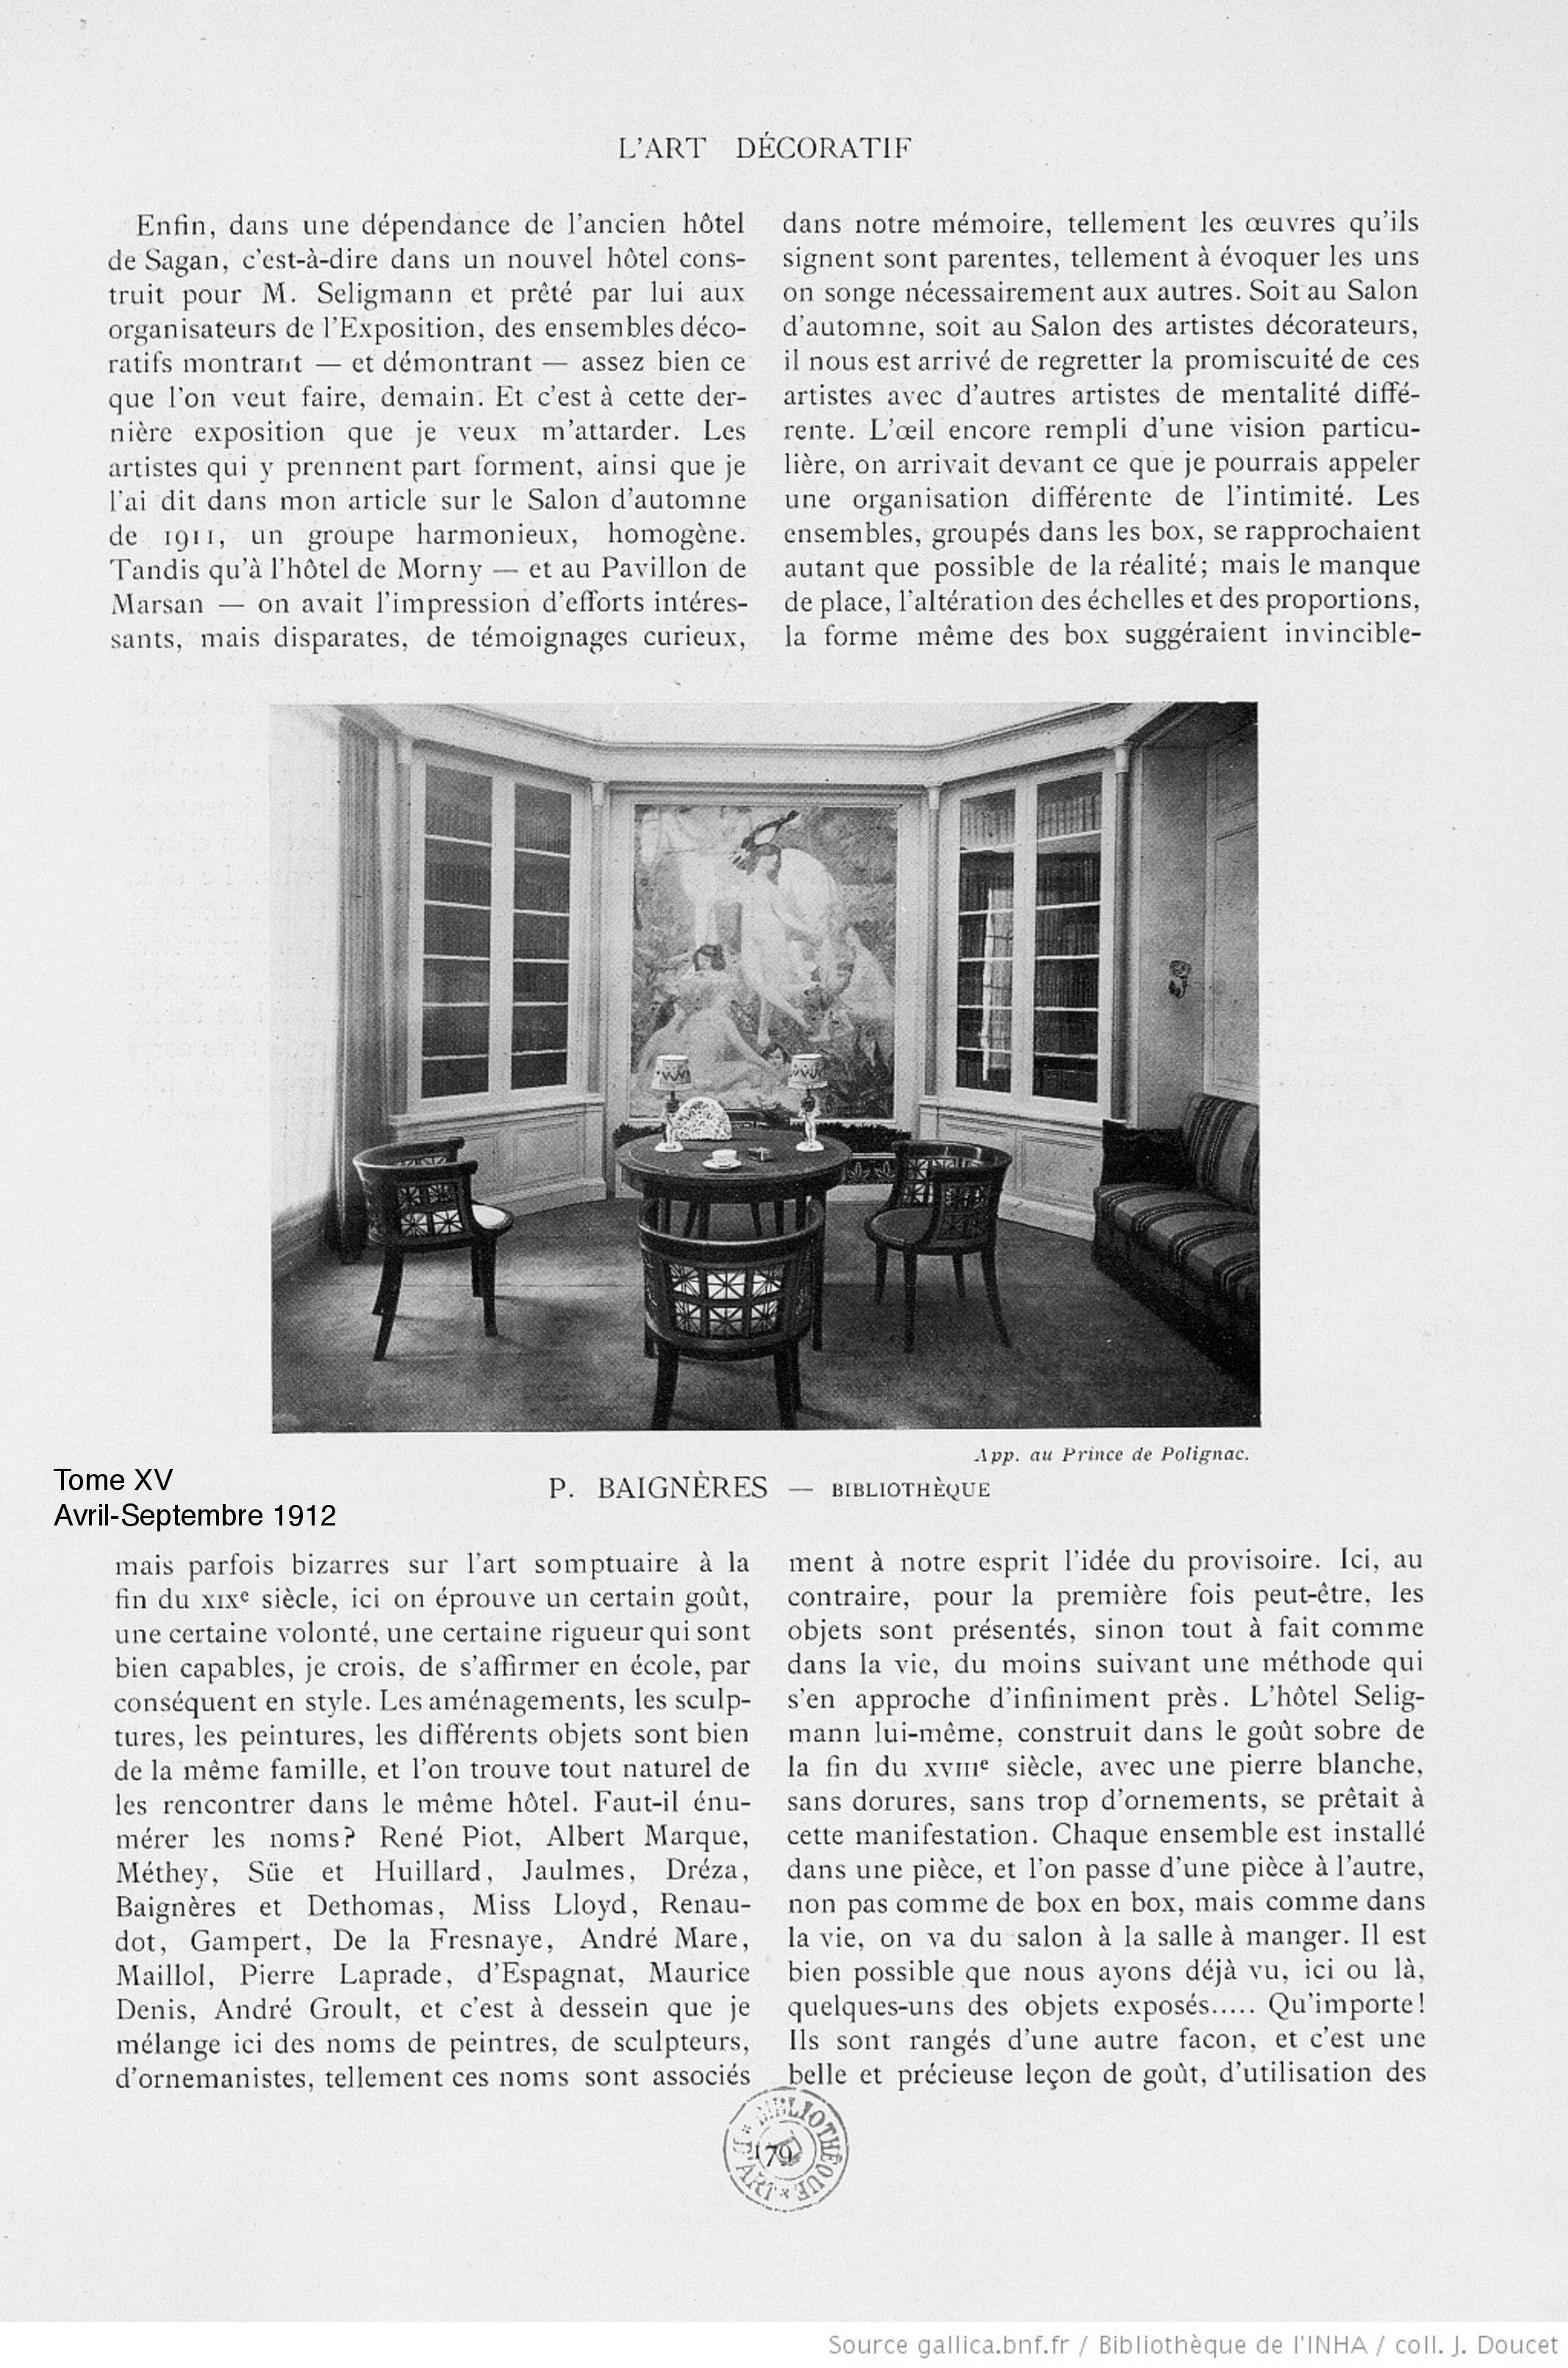 L'Art et les Artistes, avril - septembre 1912